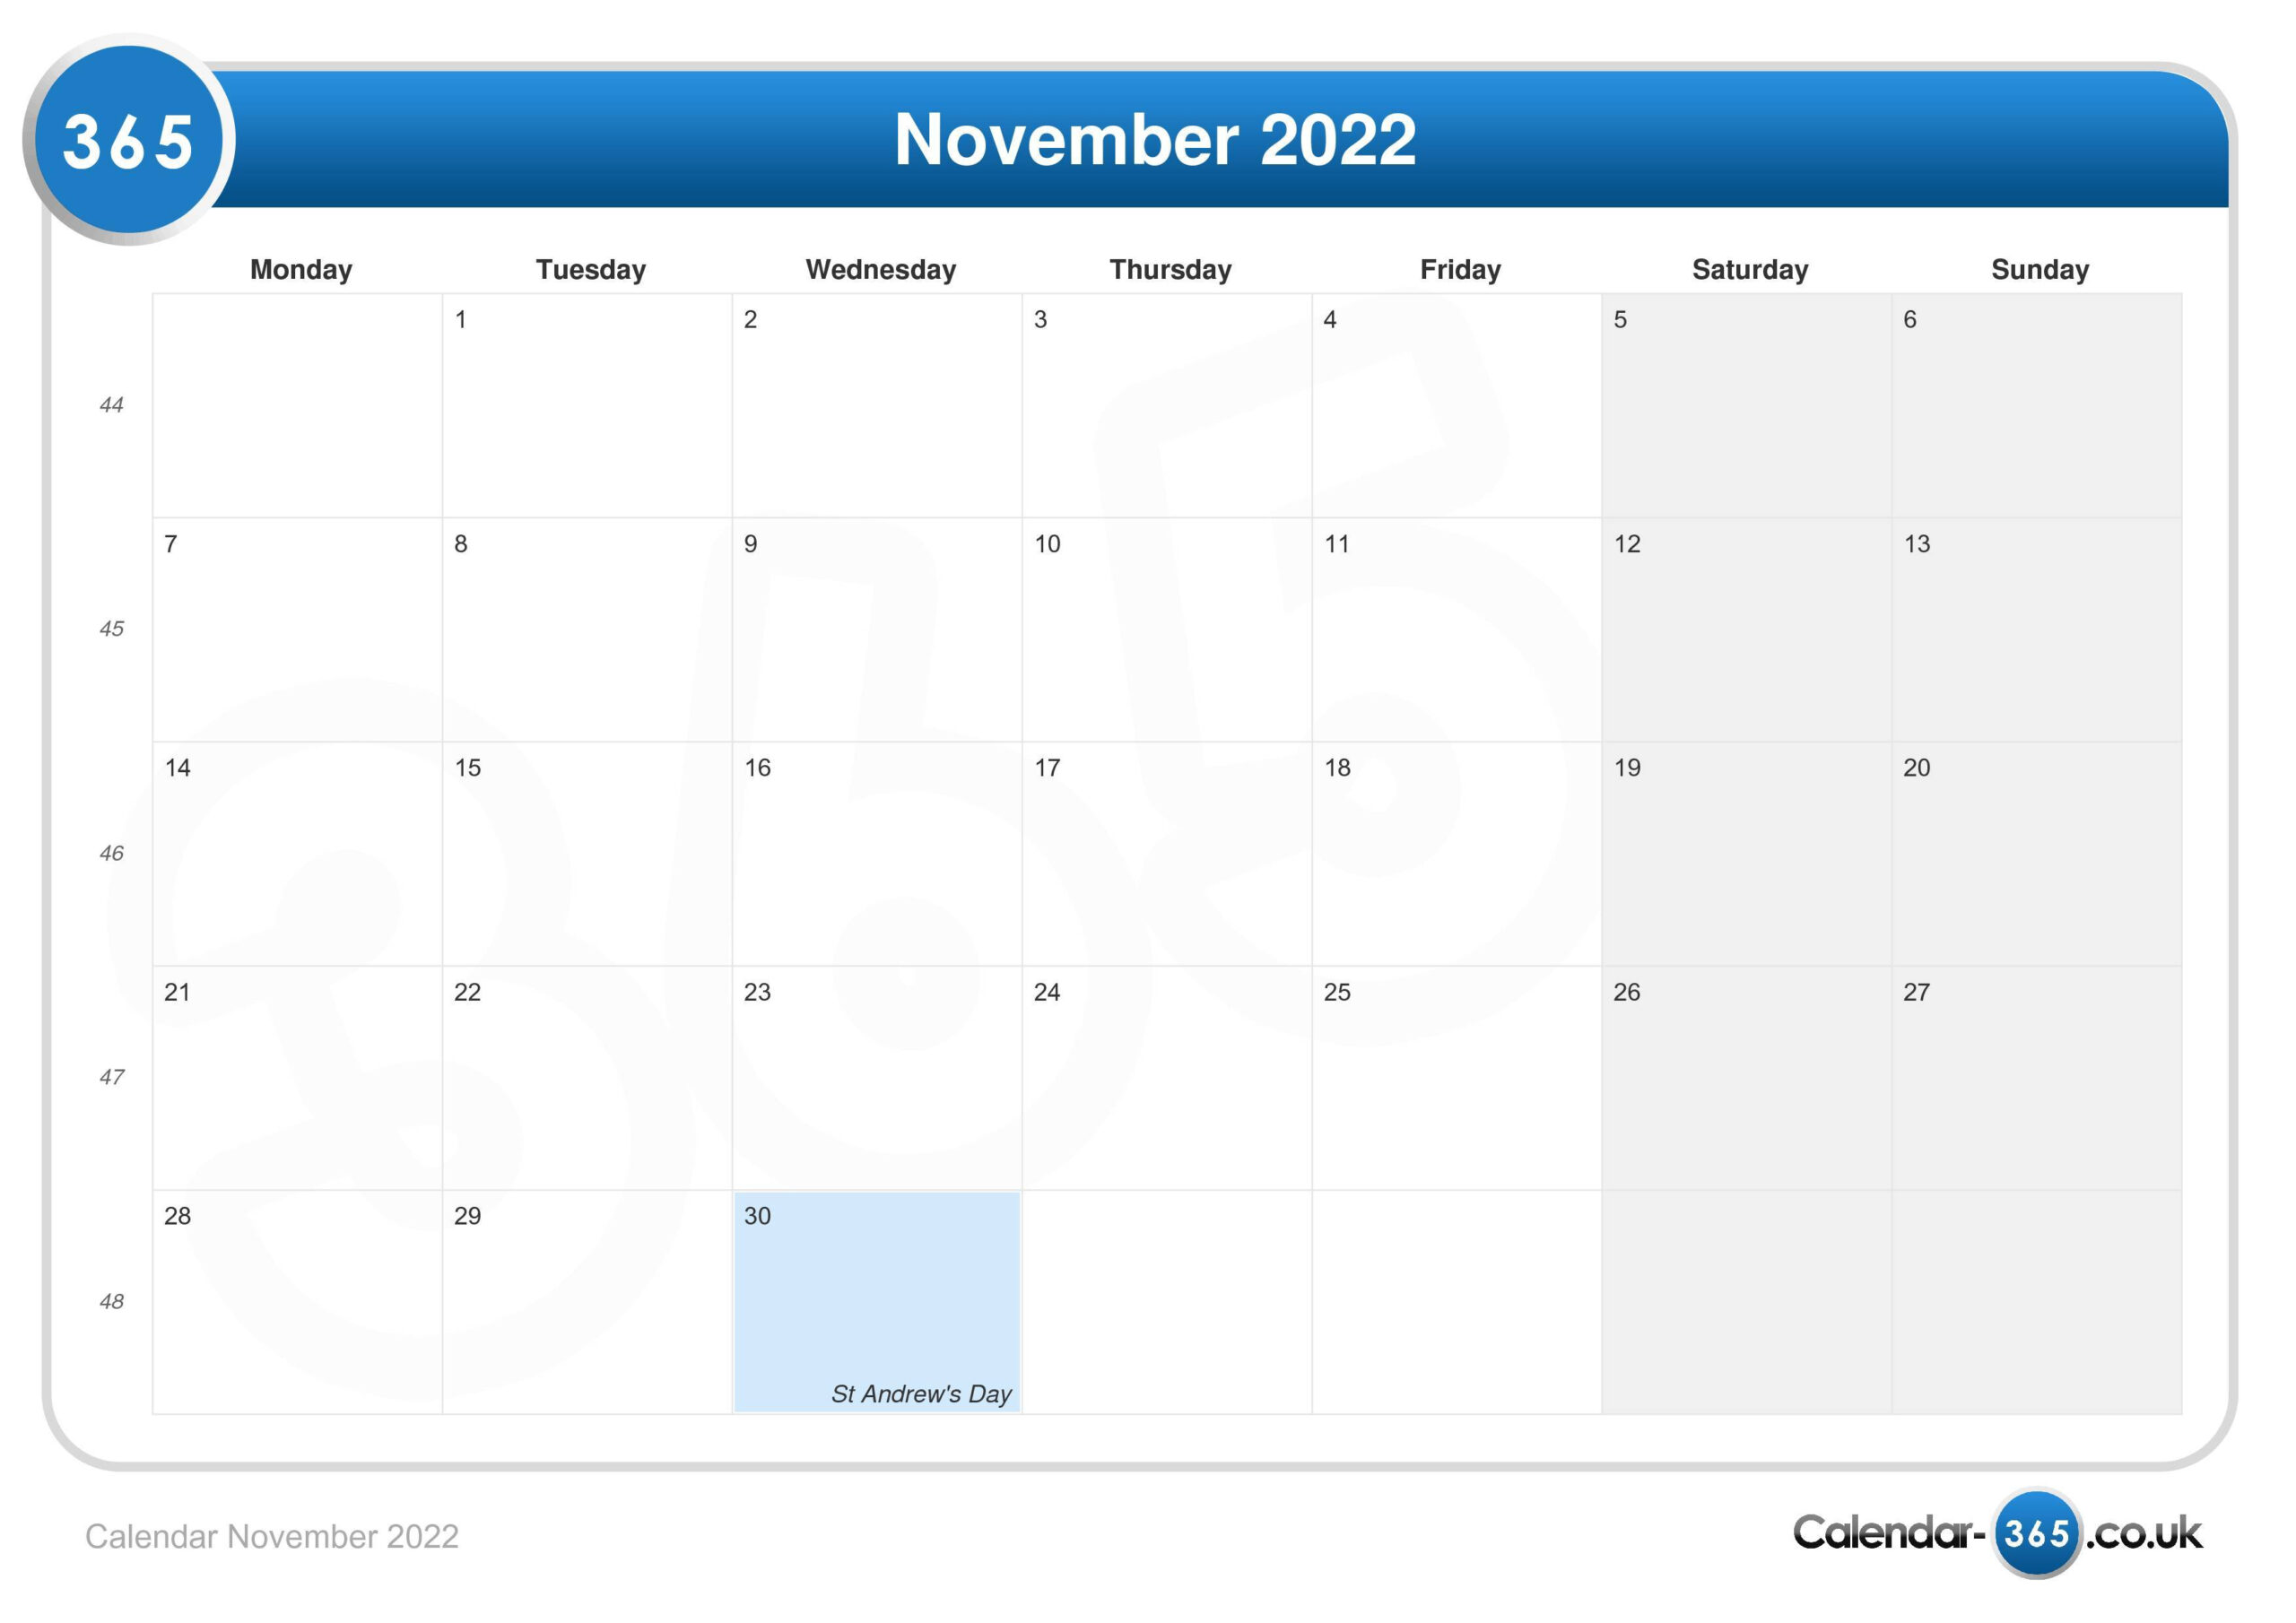 Get August 9 2022 Calendar